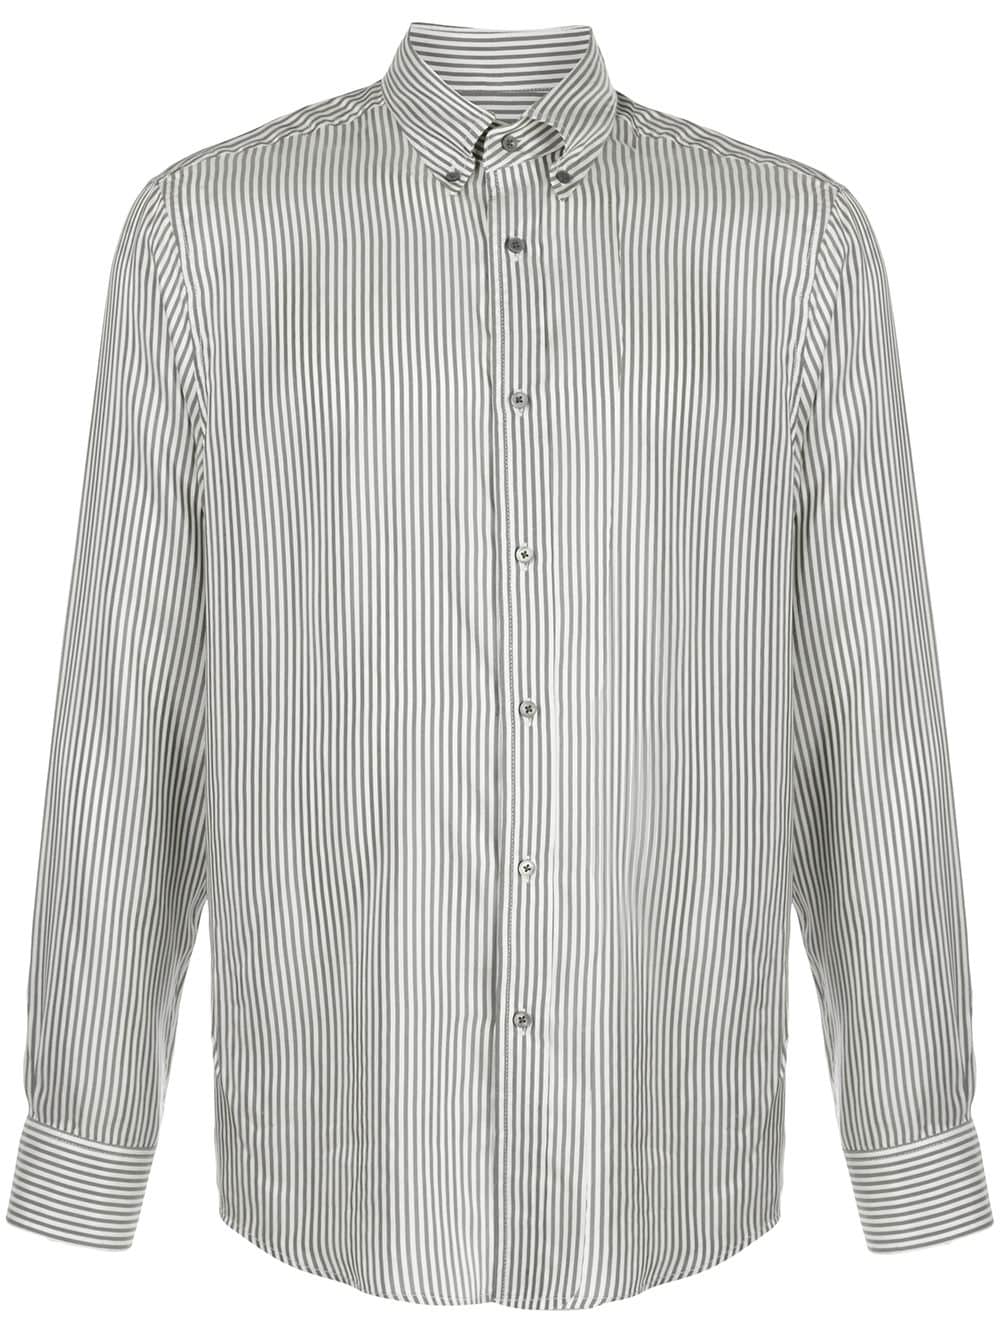 Teddy Von Ranson Striped Oxford Shirt In White